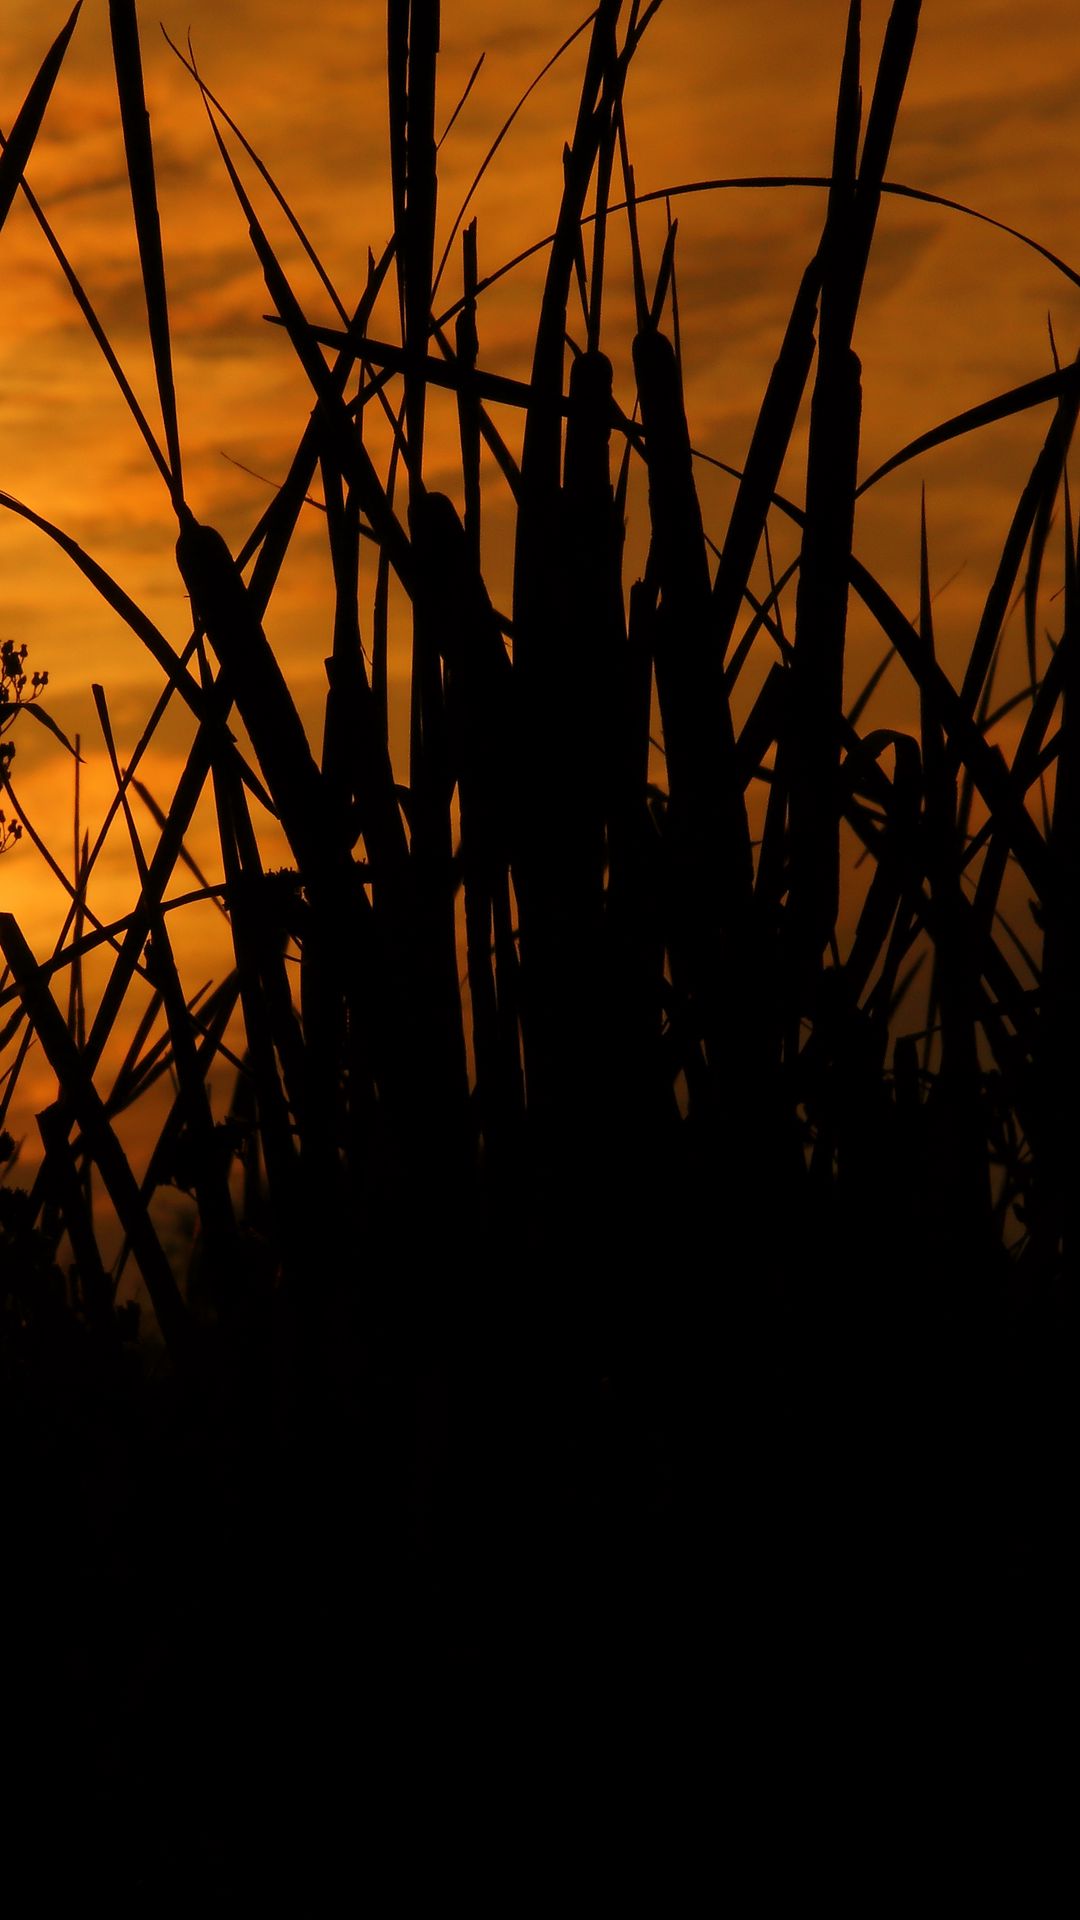 Hd Wallpaper Nature Reeds Grass Sunset